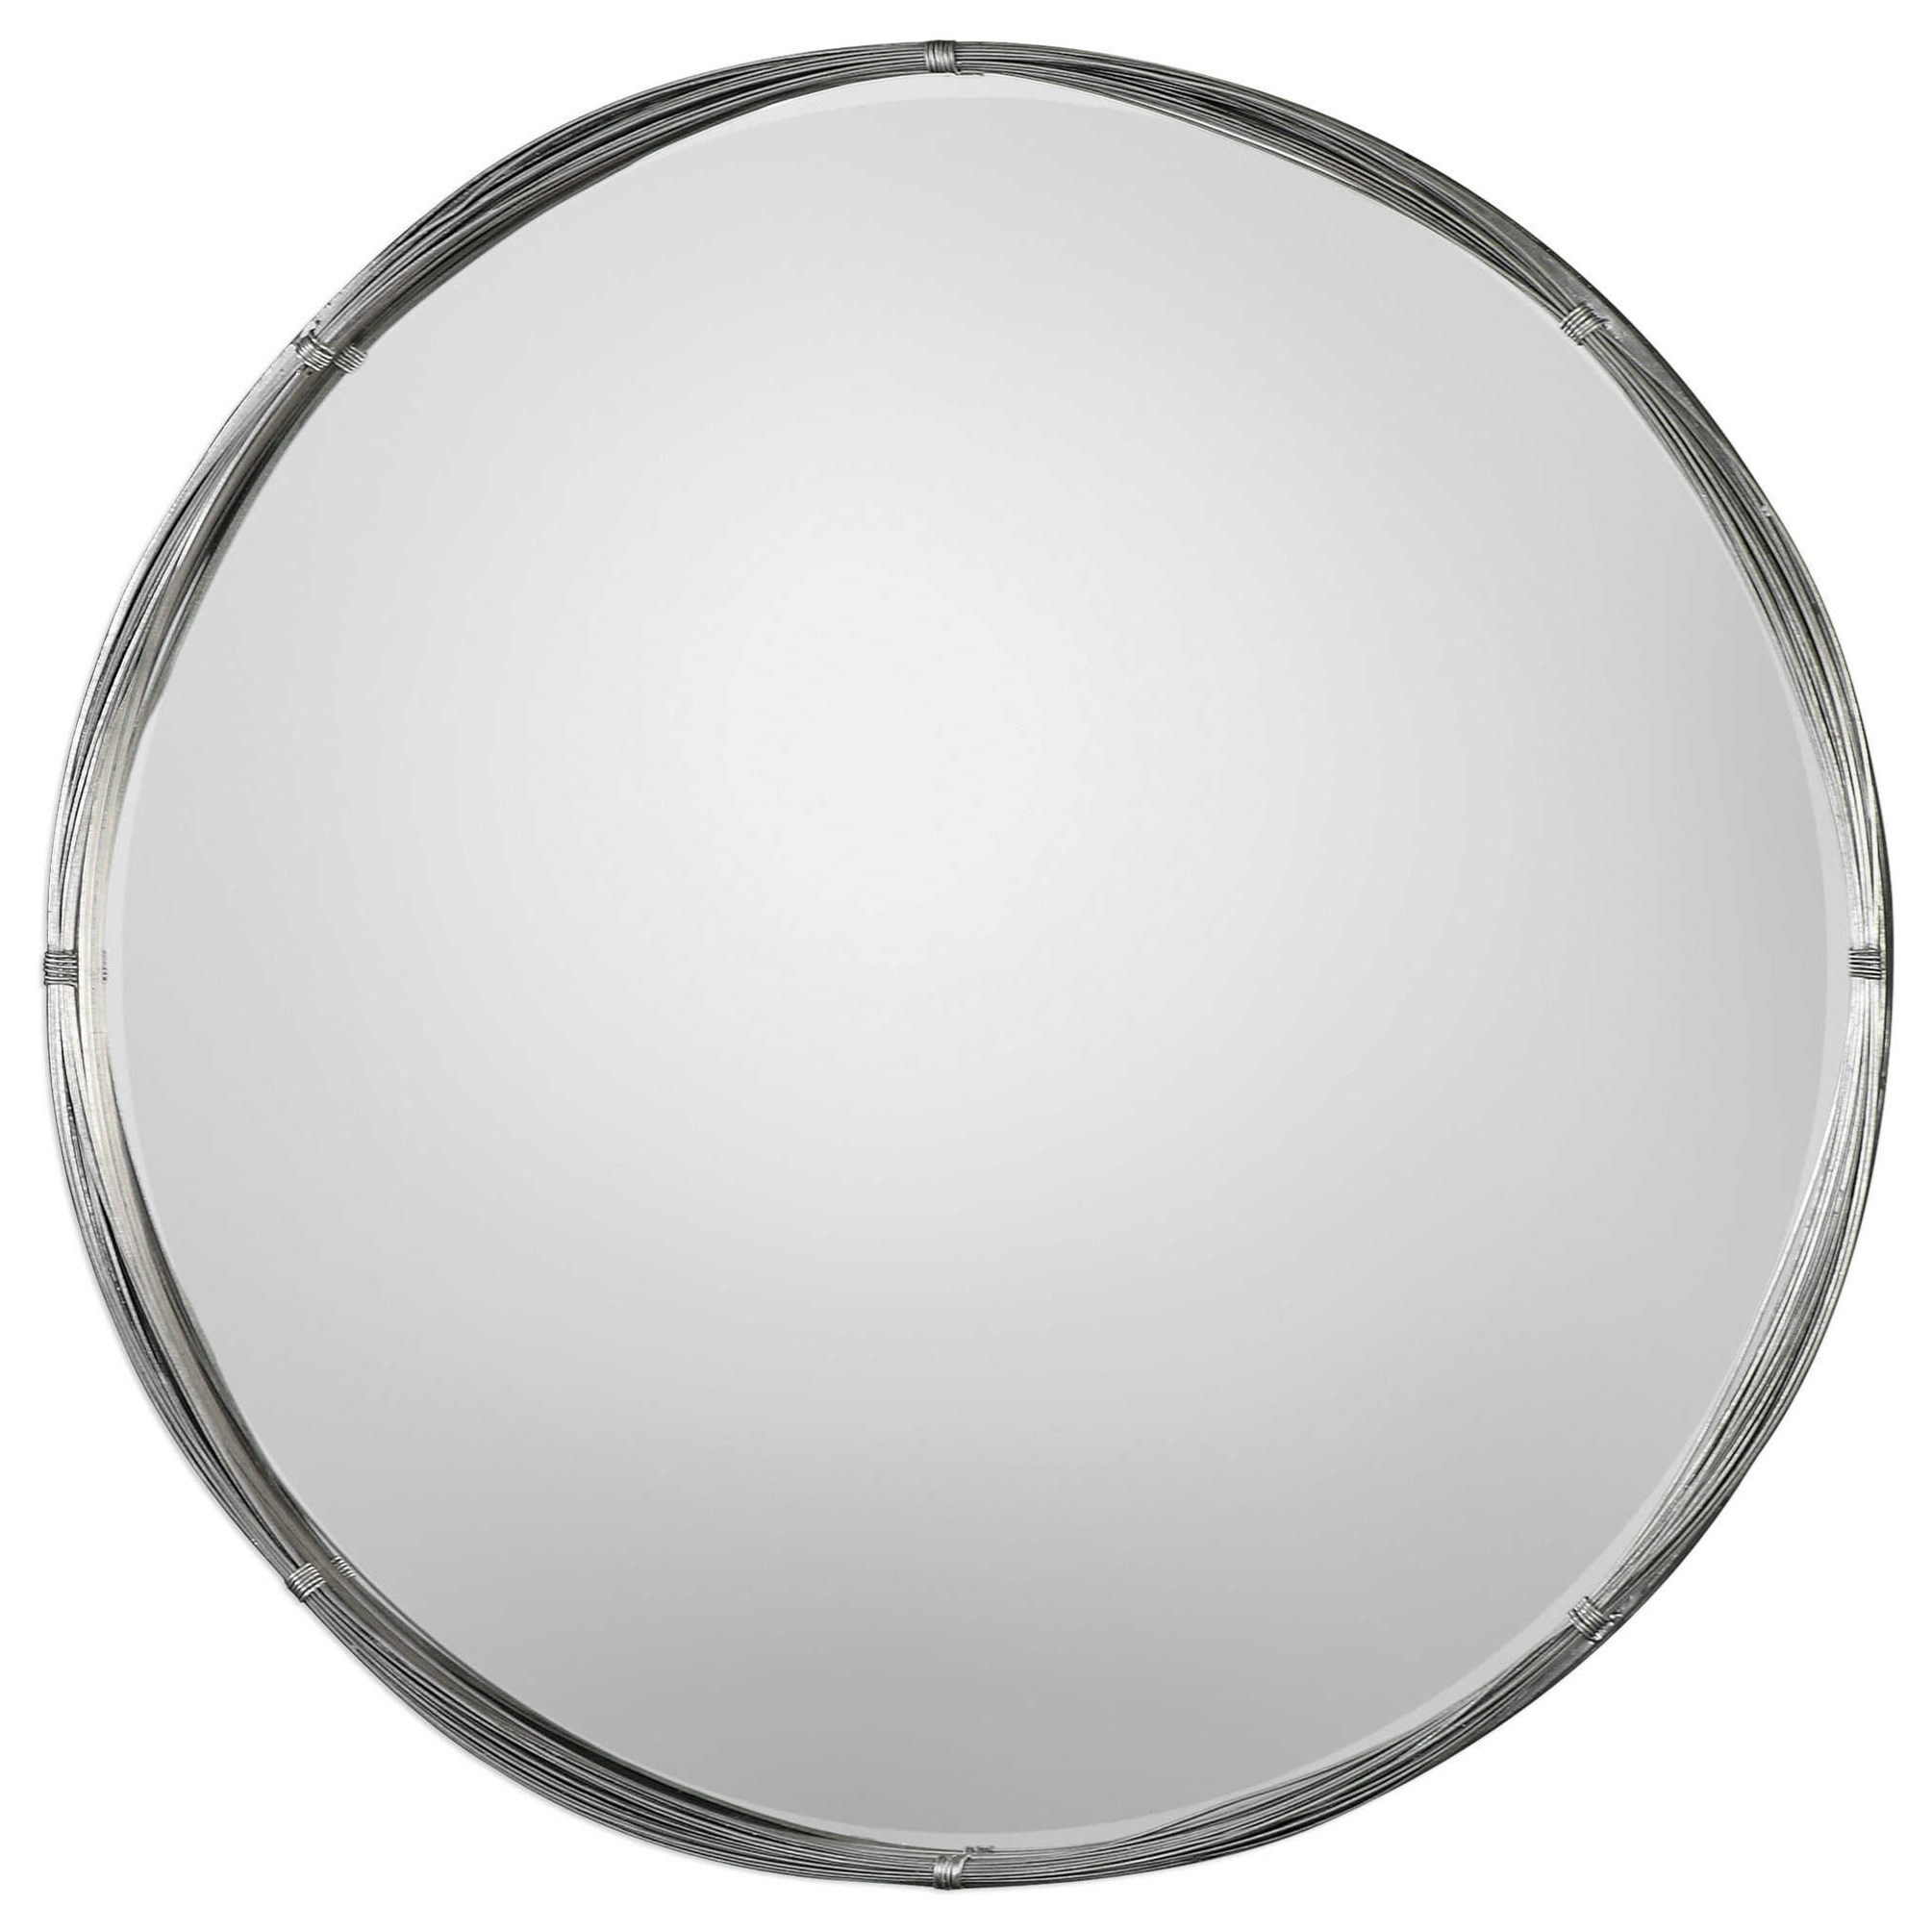 Uttermost 09278 Orion Metallic Silver Leaf Finish 36 Round Mirror